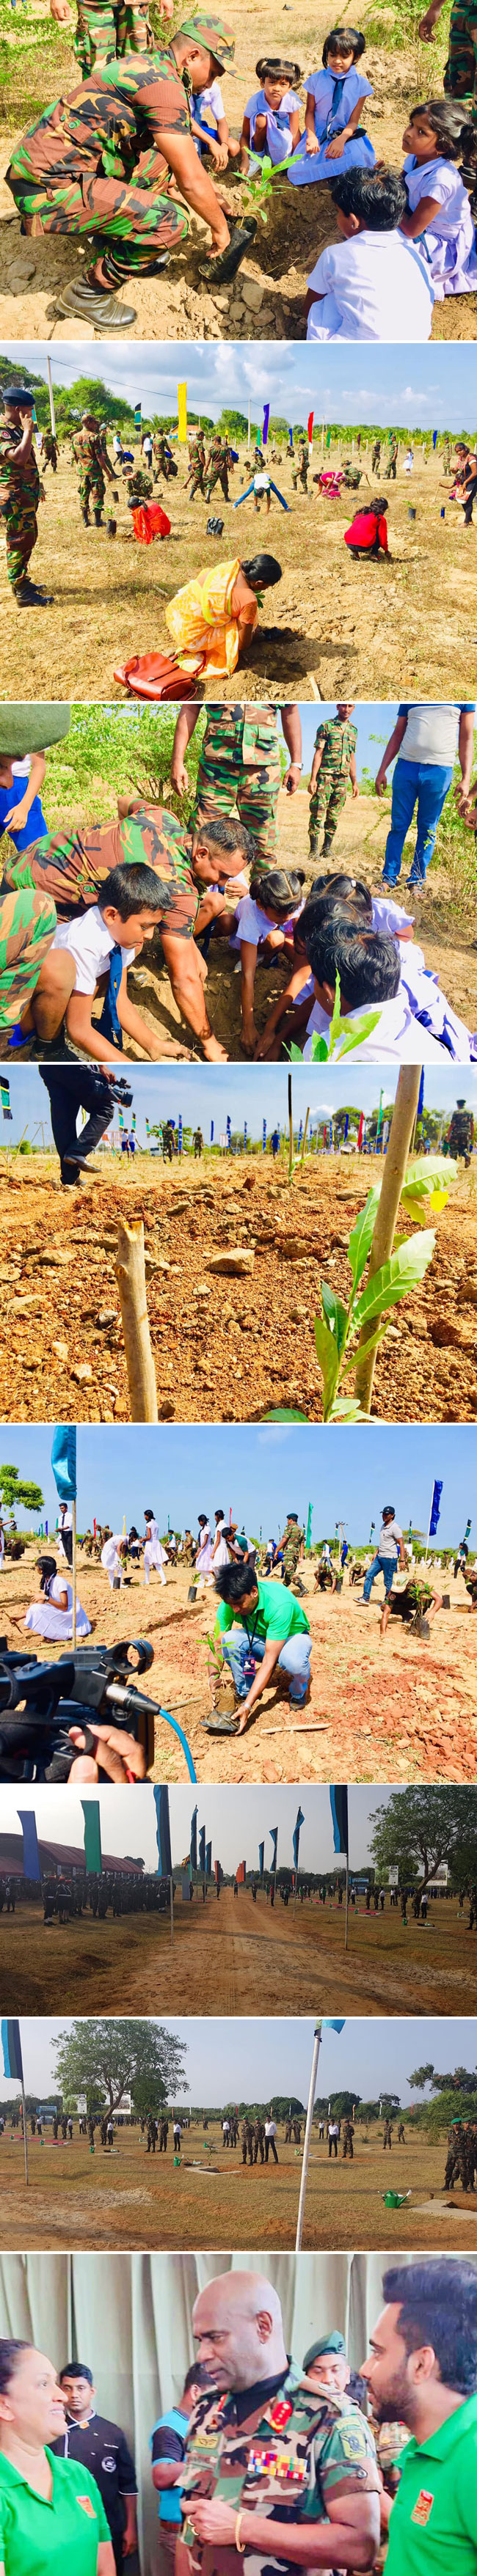 Manusath Derana reforestation project at Wilpattu...